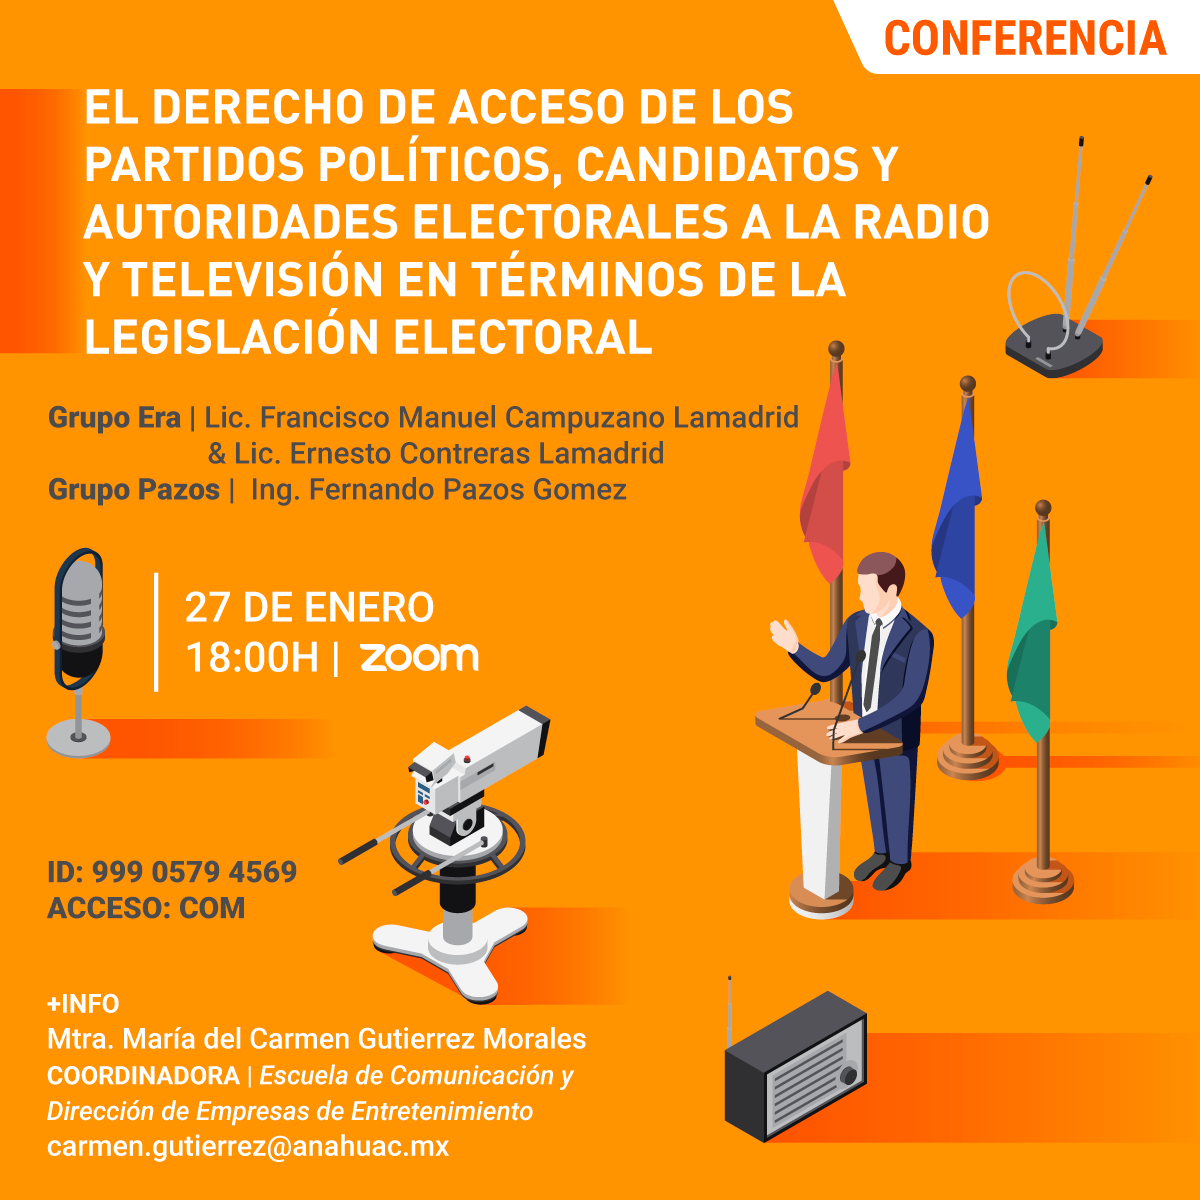 El Derecho de Acceso de los Partidos Políticos, Candidatos y Autoridades Electorales a la Radio y Televisión en Términos de la Legislación Electoral